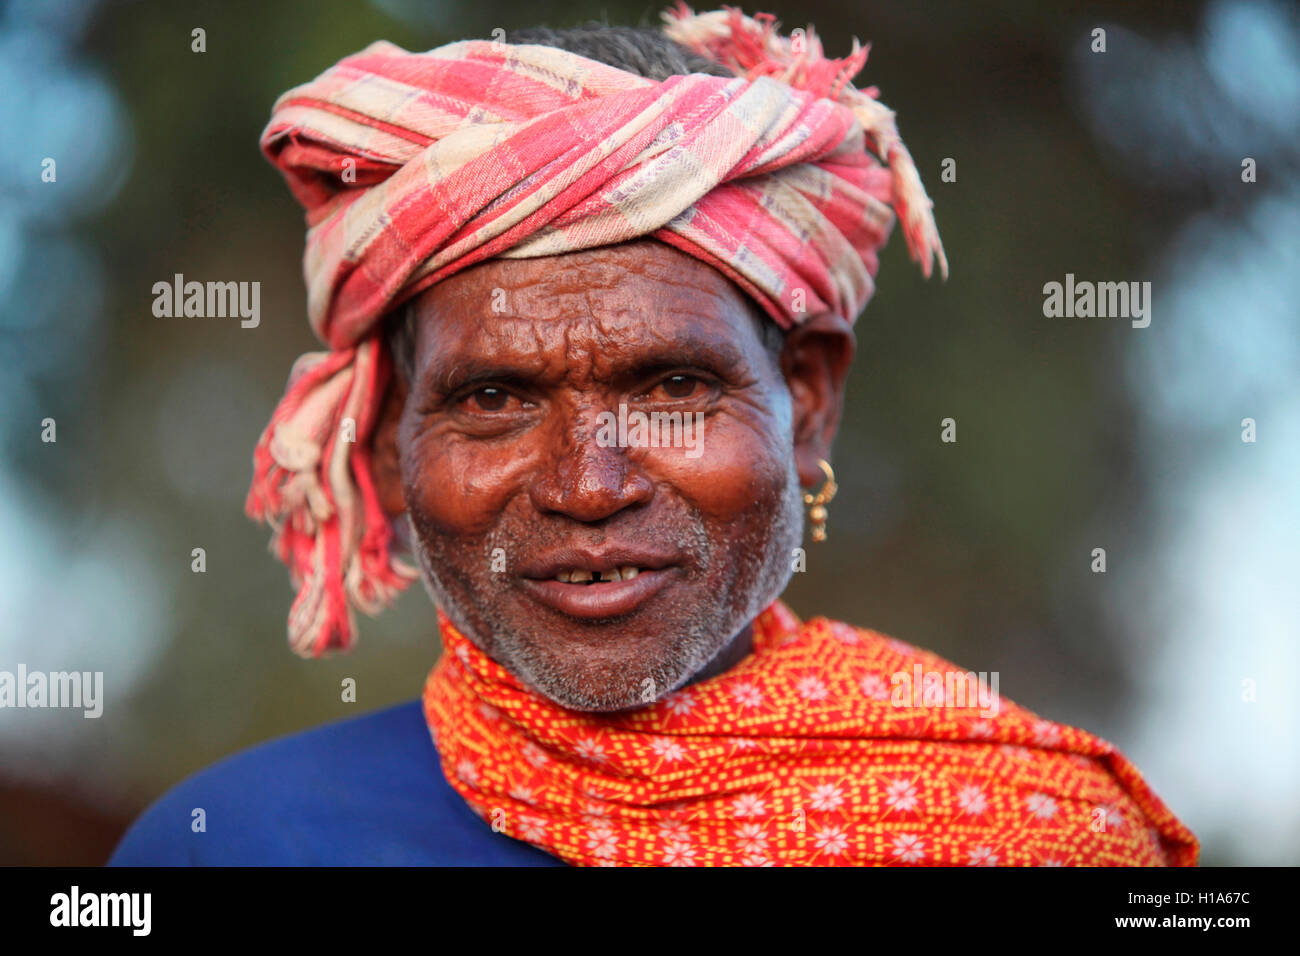 Old Man, tribu Dhurwa, village de Gonchabar, Chattisgarh, Inde. Visages ruraux de l'Inde Banque D'Images